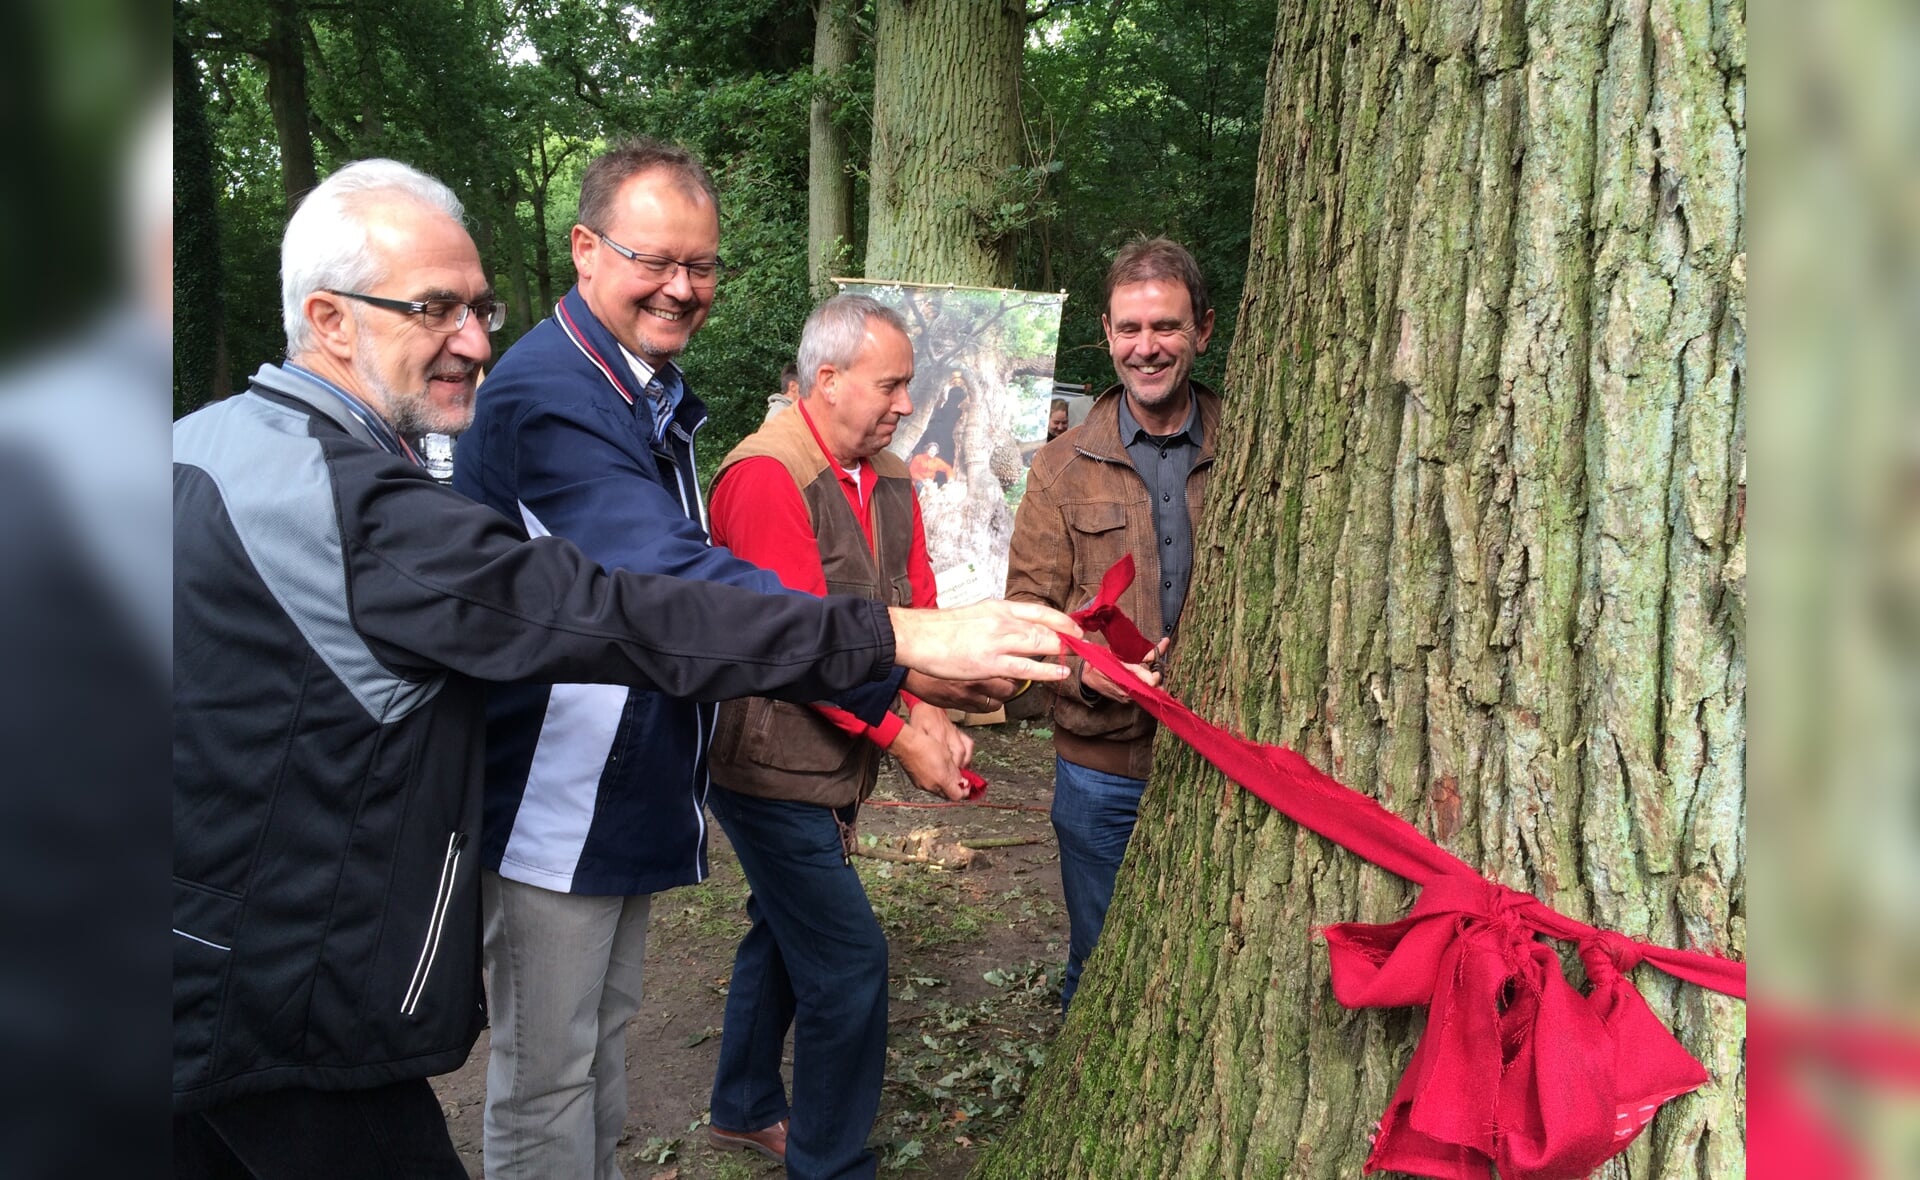 René Fraaije, Erik ter Heide en de wethouders Herman van Wanrooij en Peter van de Wiel onthulden de nieuwste Wereldboom.